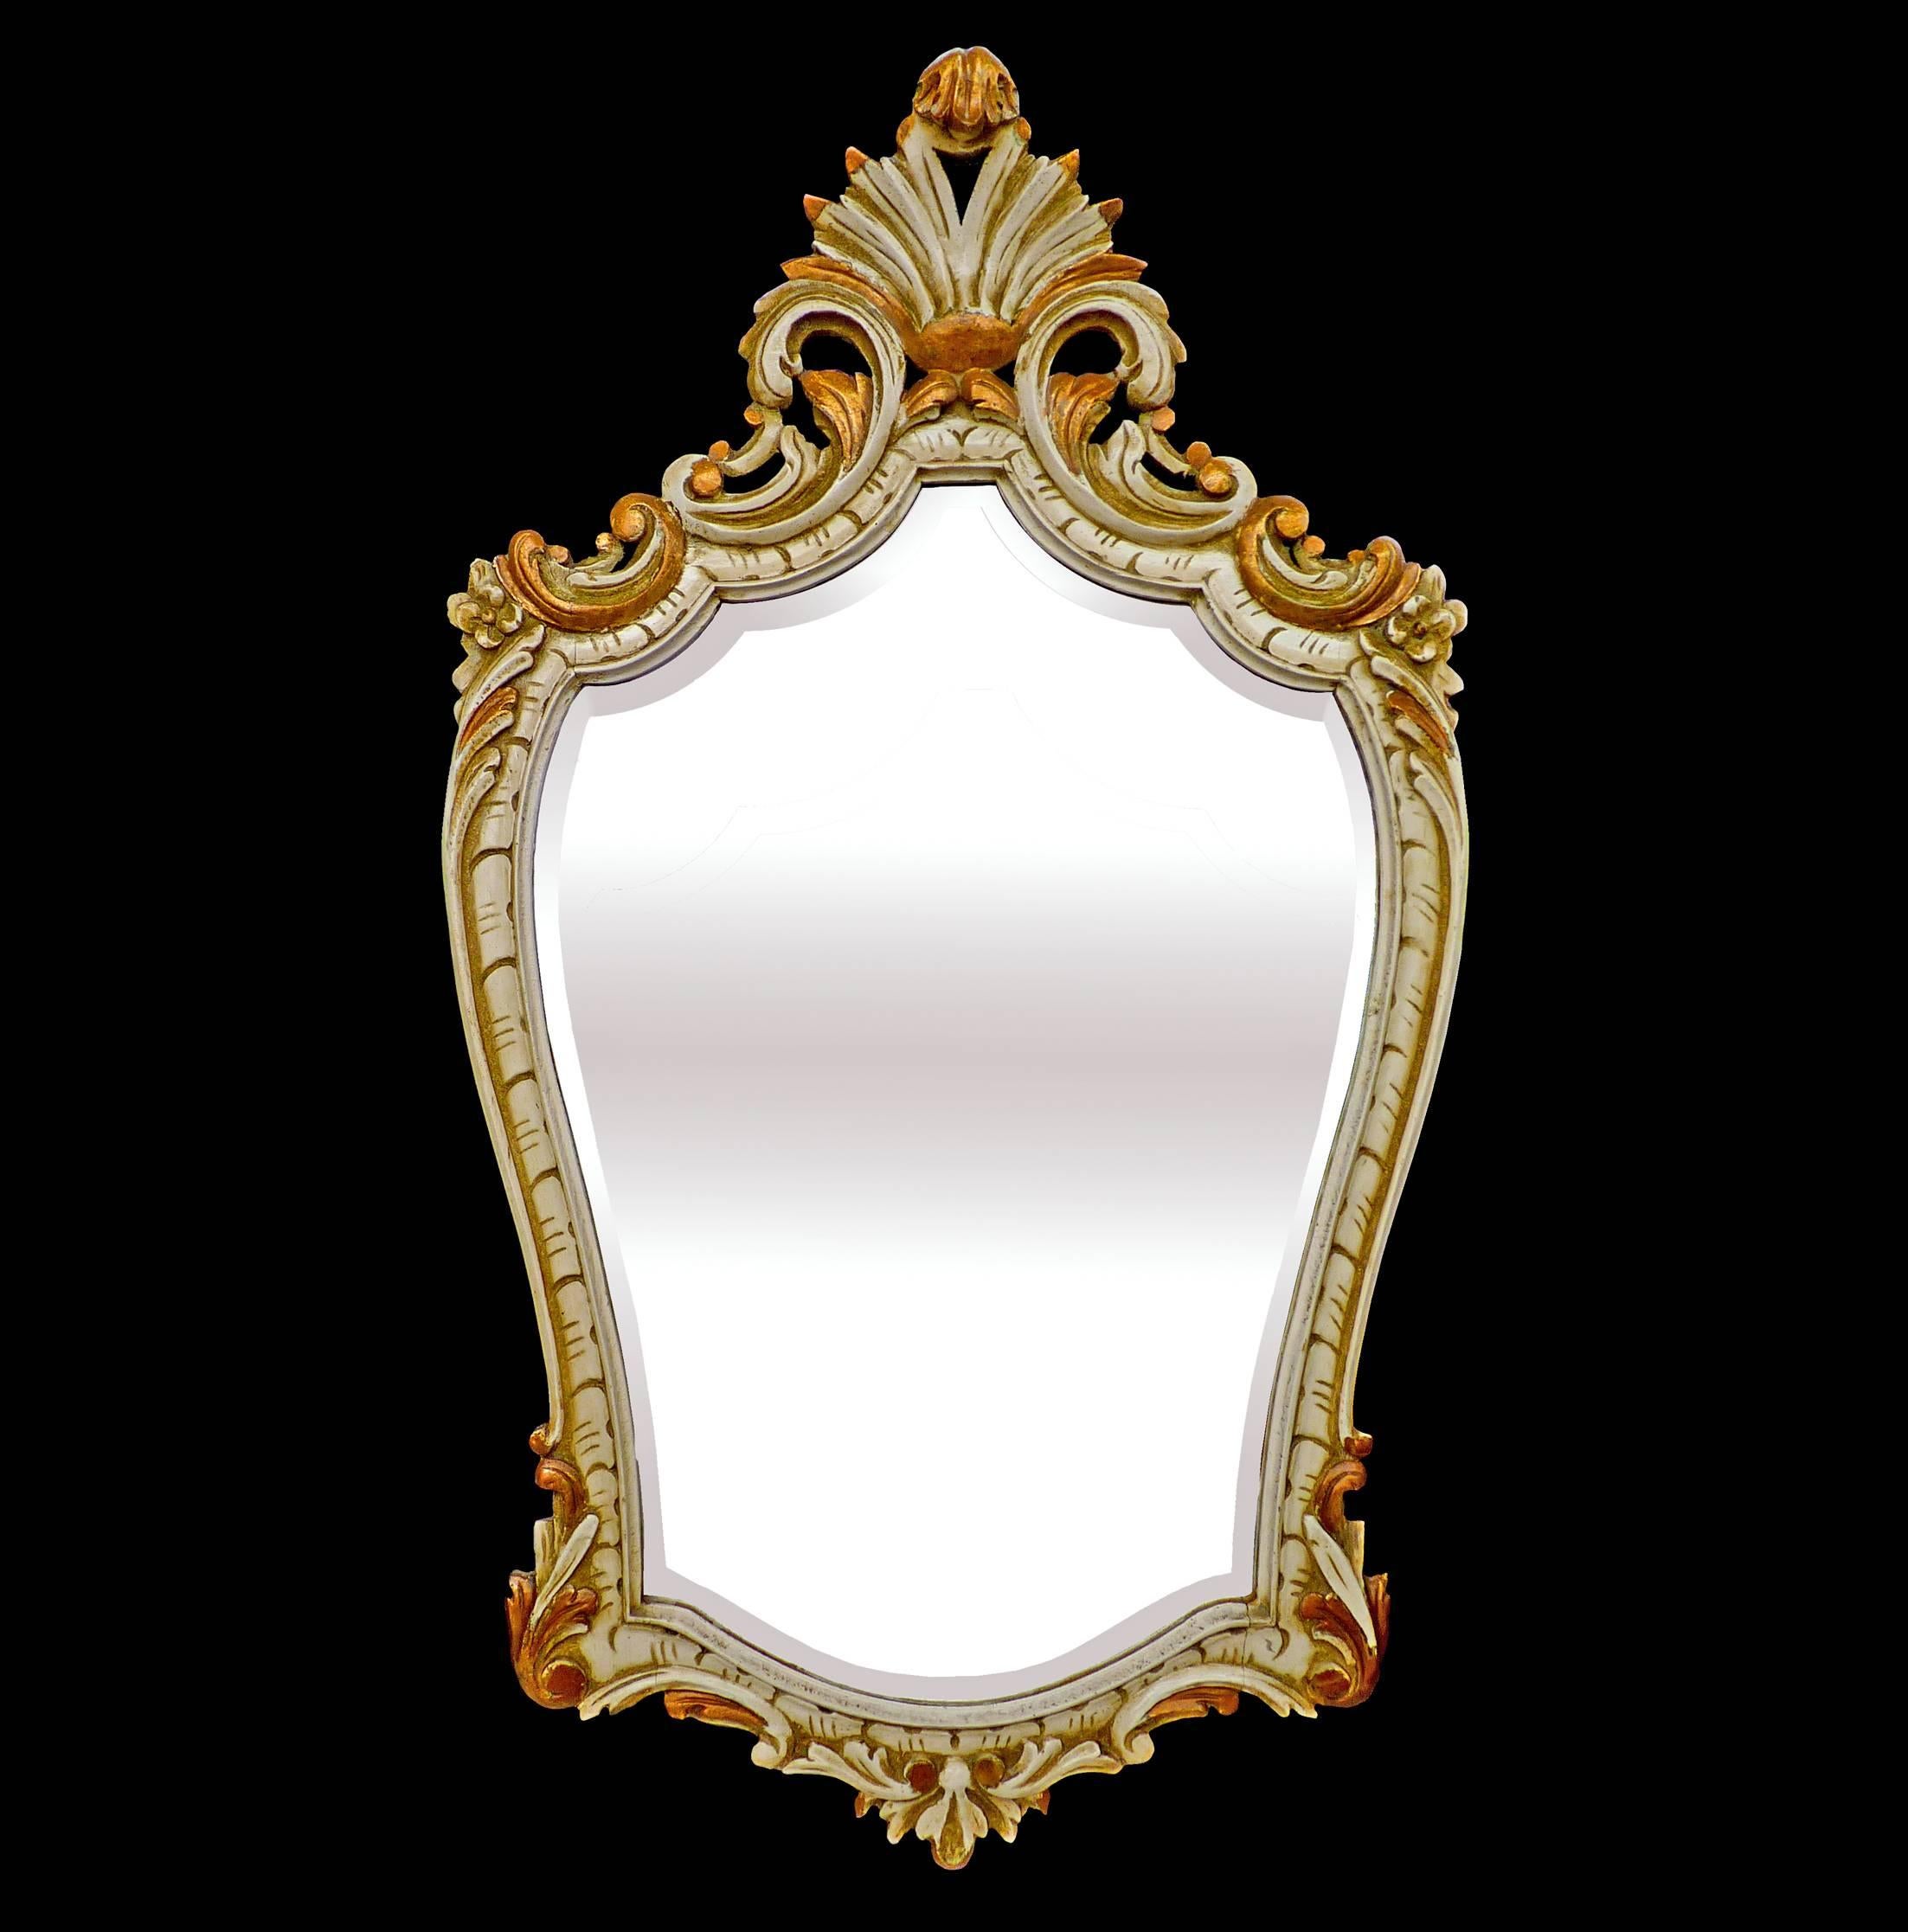 Miroir ancien de style Louis XV en bois peint et doré avec des éléments floraux et des coquillages sculptés à la main
miroir biseauté

Mesures :
Largeur 22 in / 56 cm
Hauteur 40 in / 100 cm
Poids 11 lb. (5,5 kg).